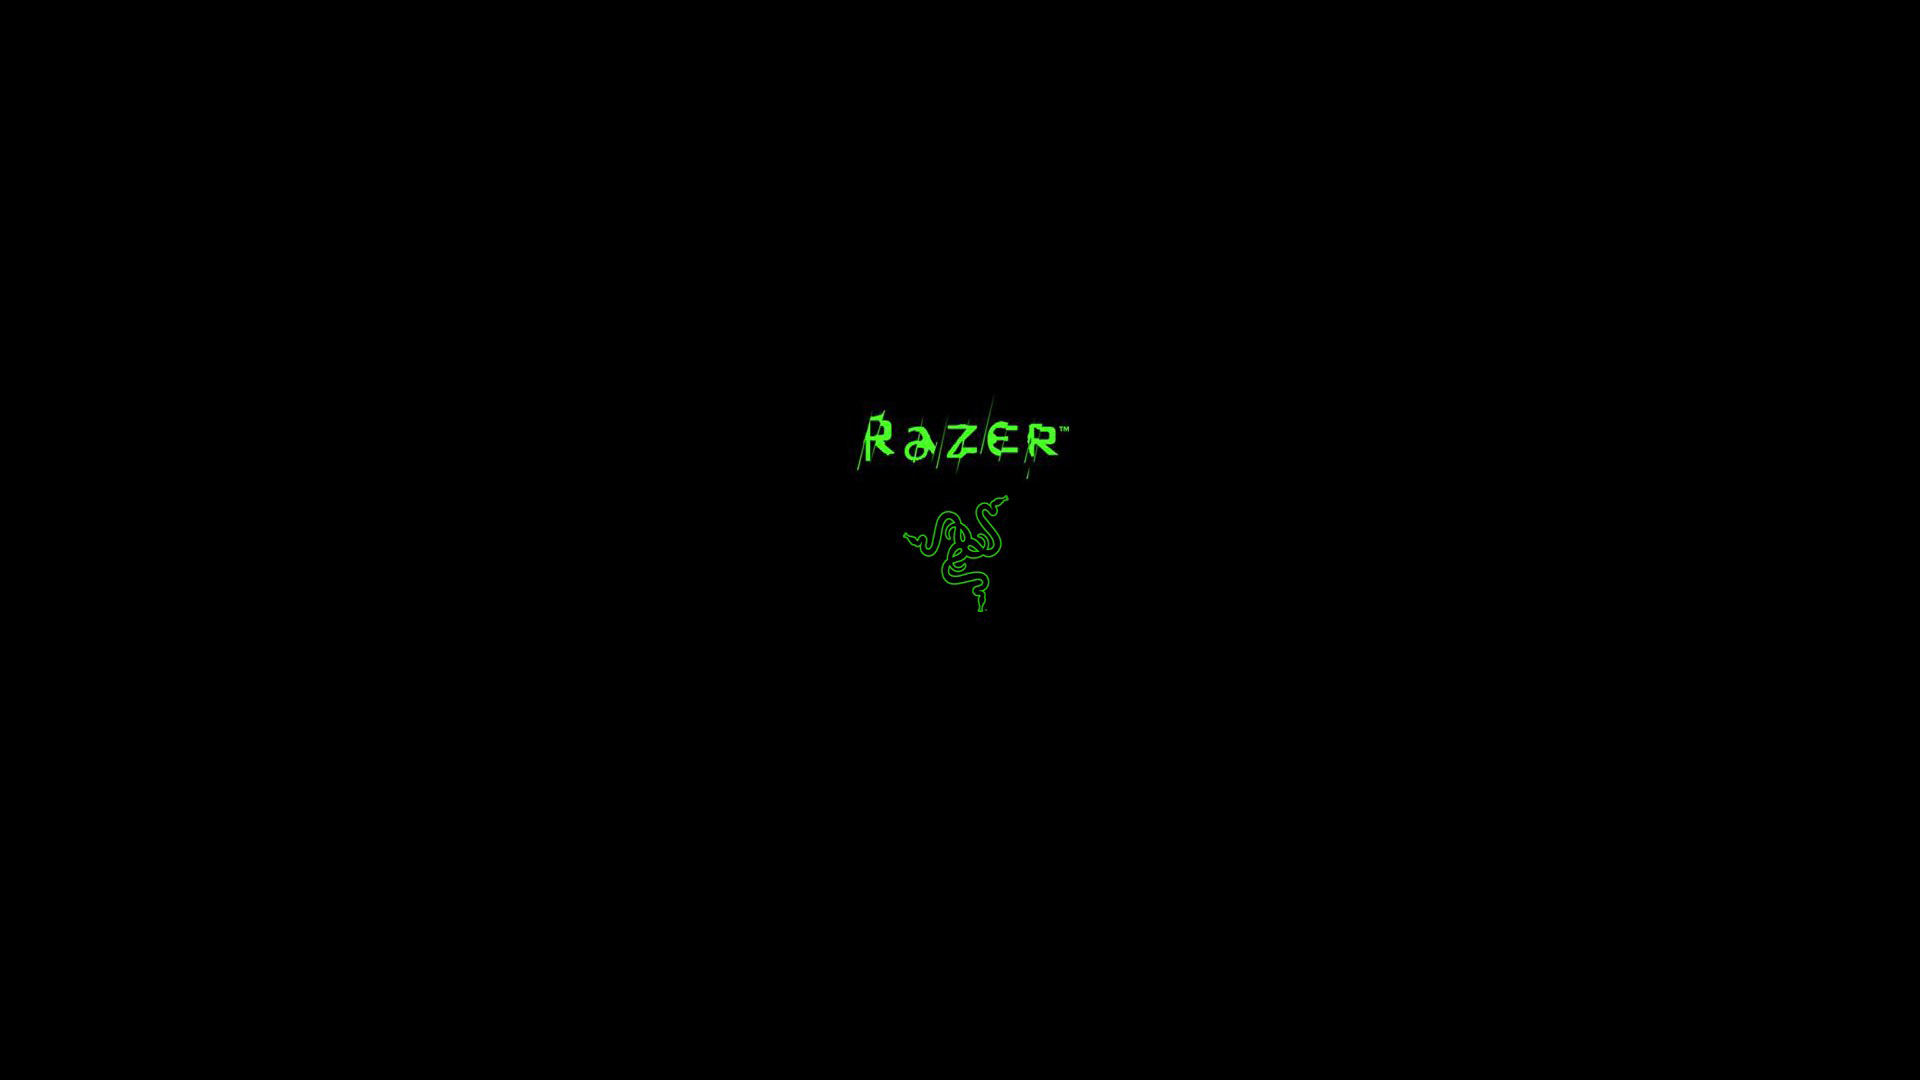 Razer Green Logo HD Wallpaper 1080p Patible For